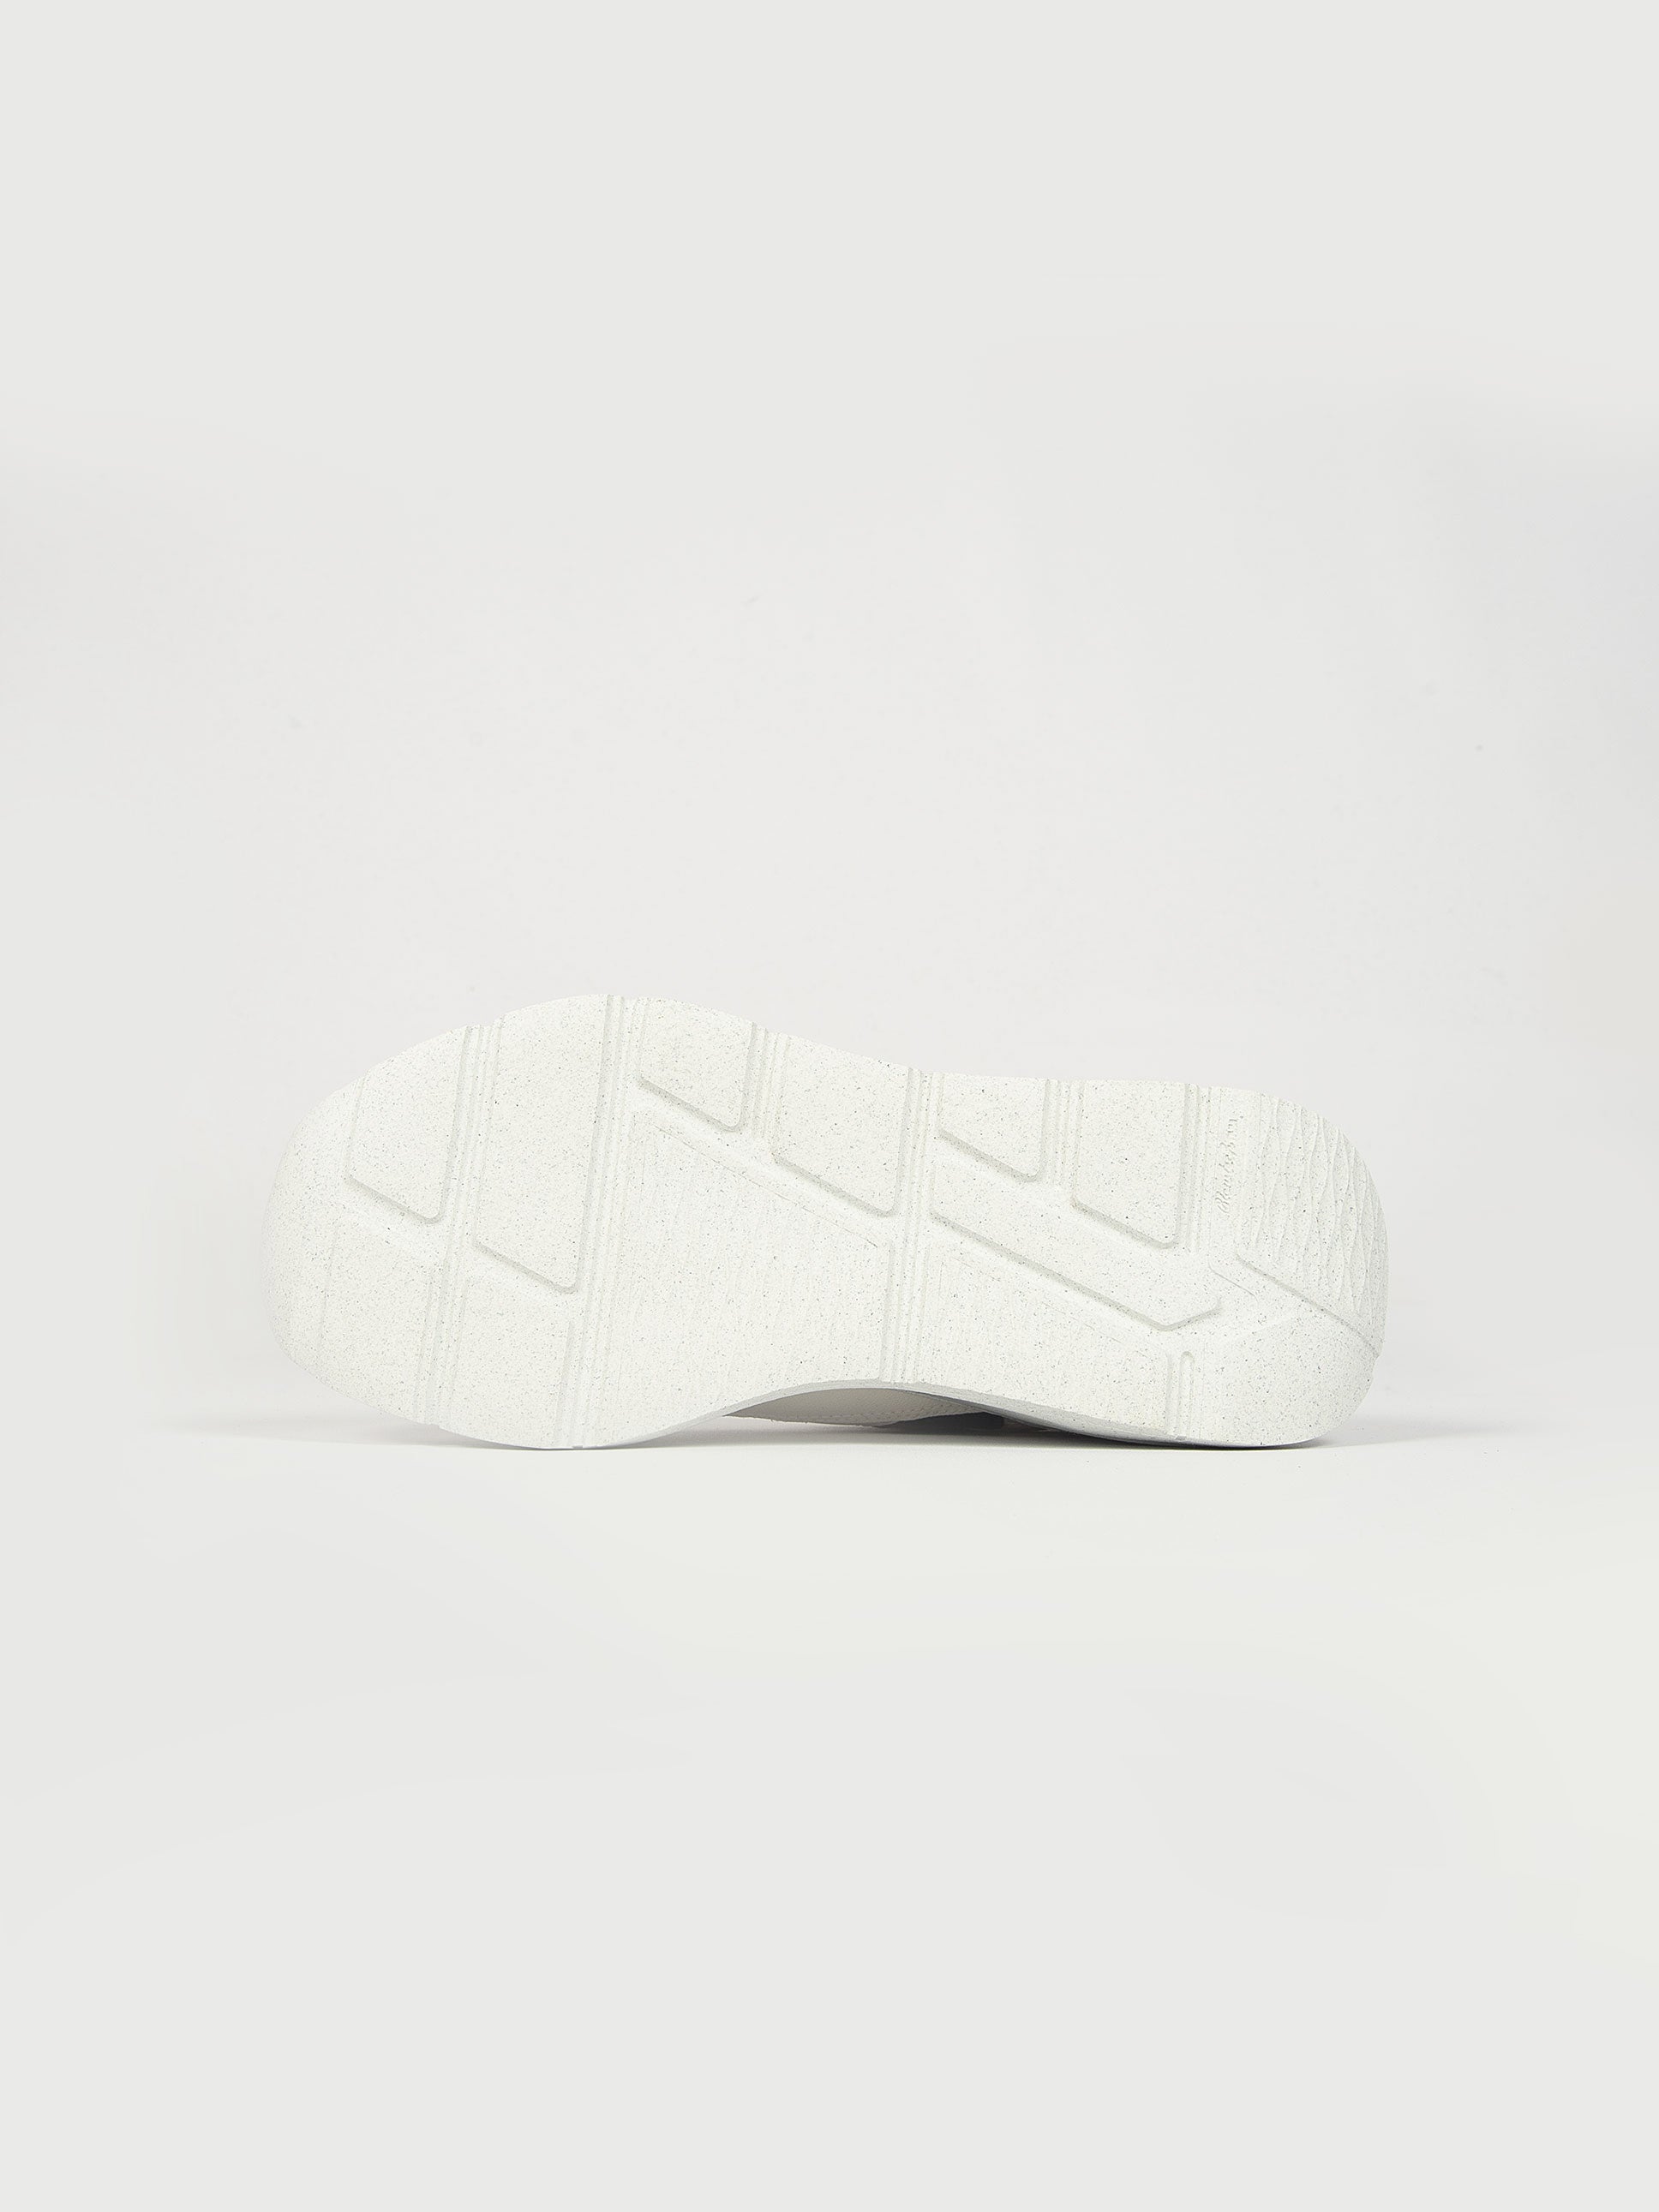 Sneakers Fuga Eco-Vegan - Bianco